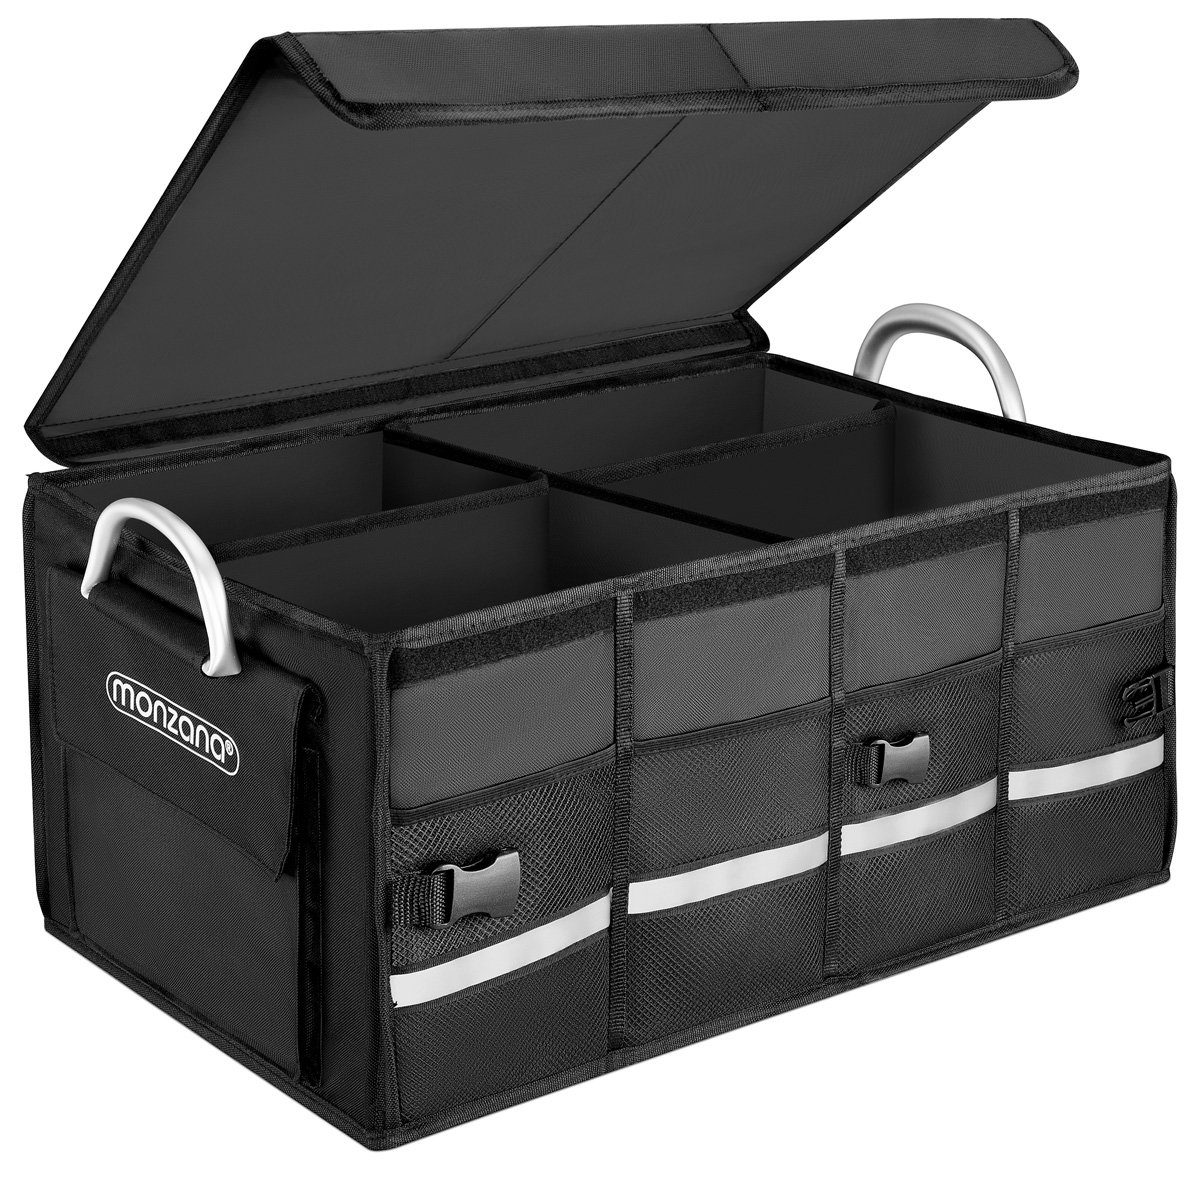 Kofferraumtasche Auto Kofferraum Organizer Klett Tasche Faltbox